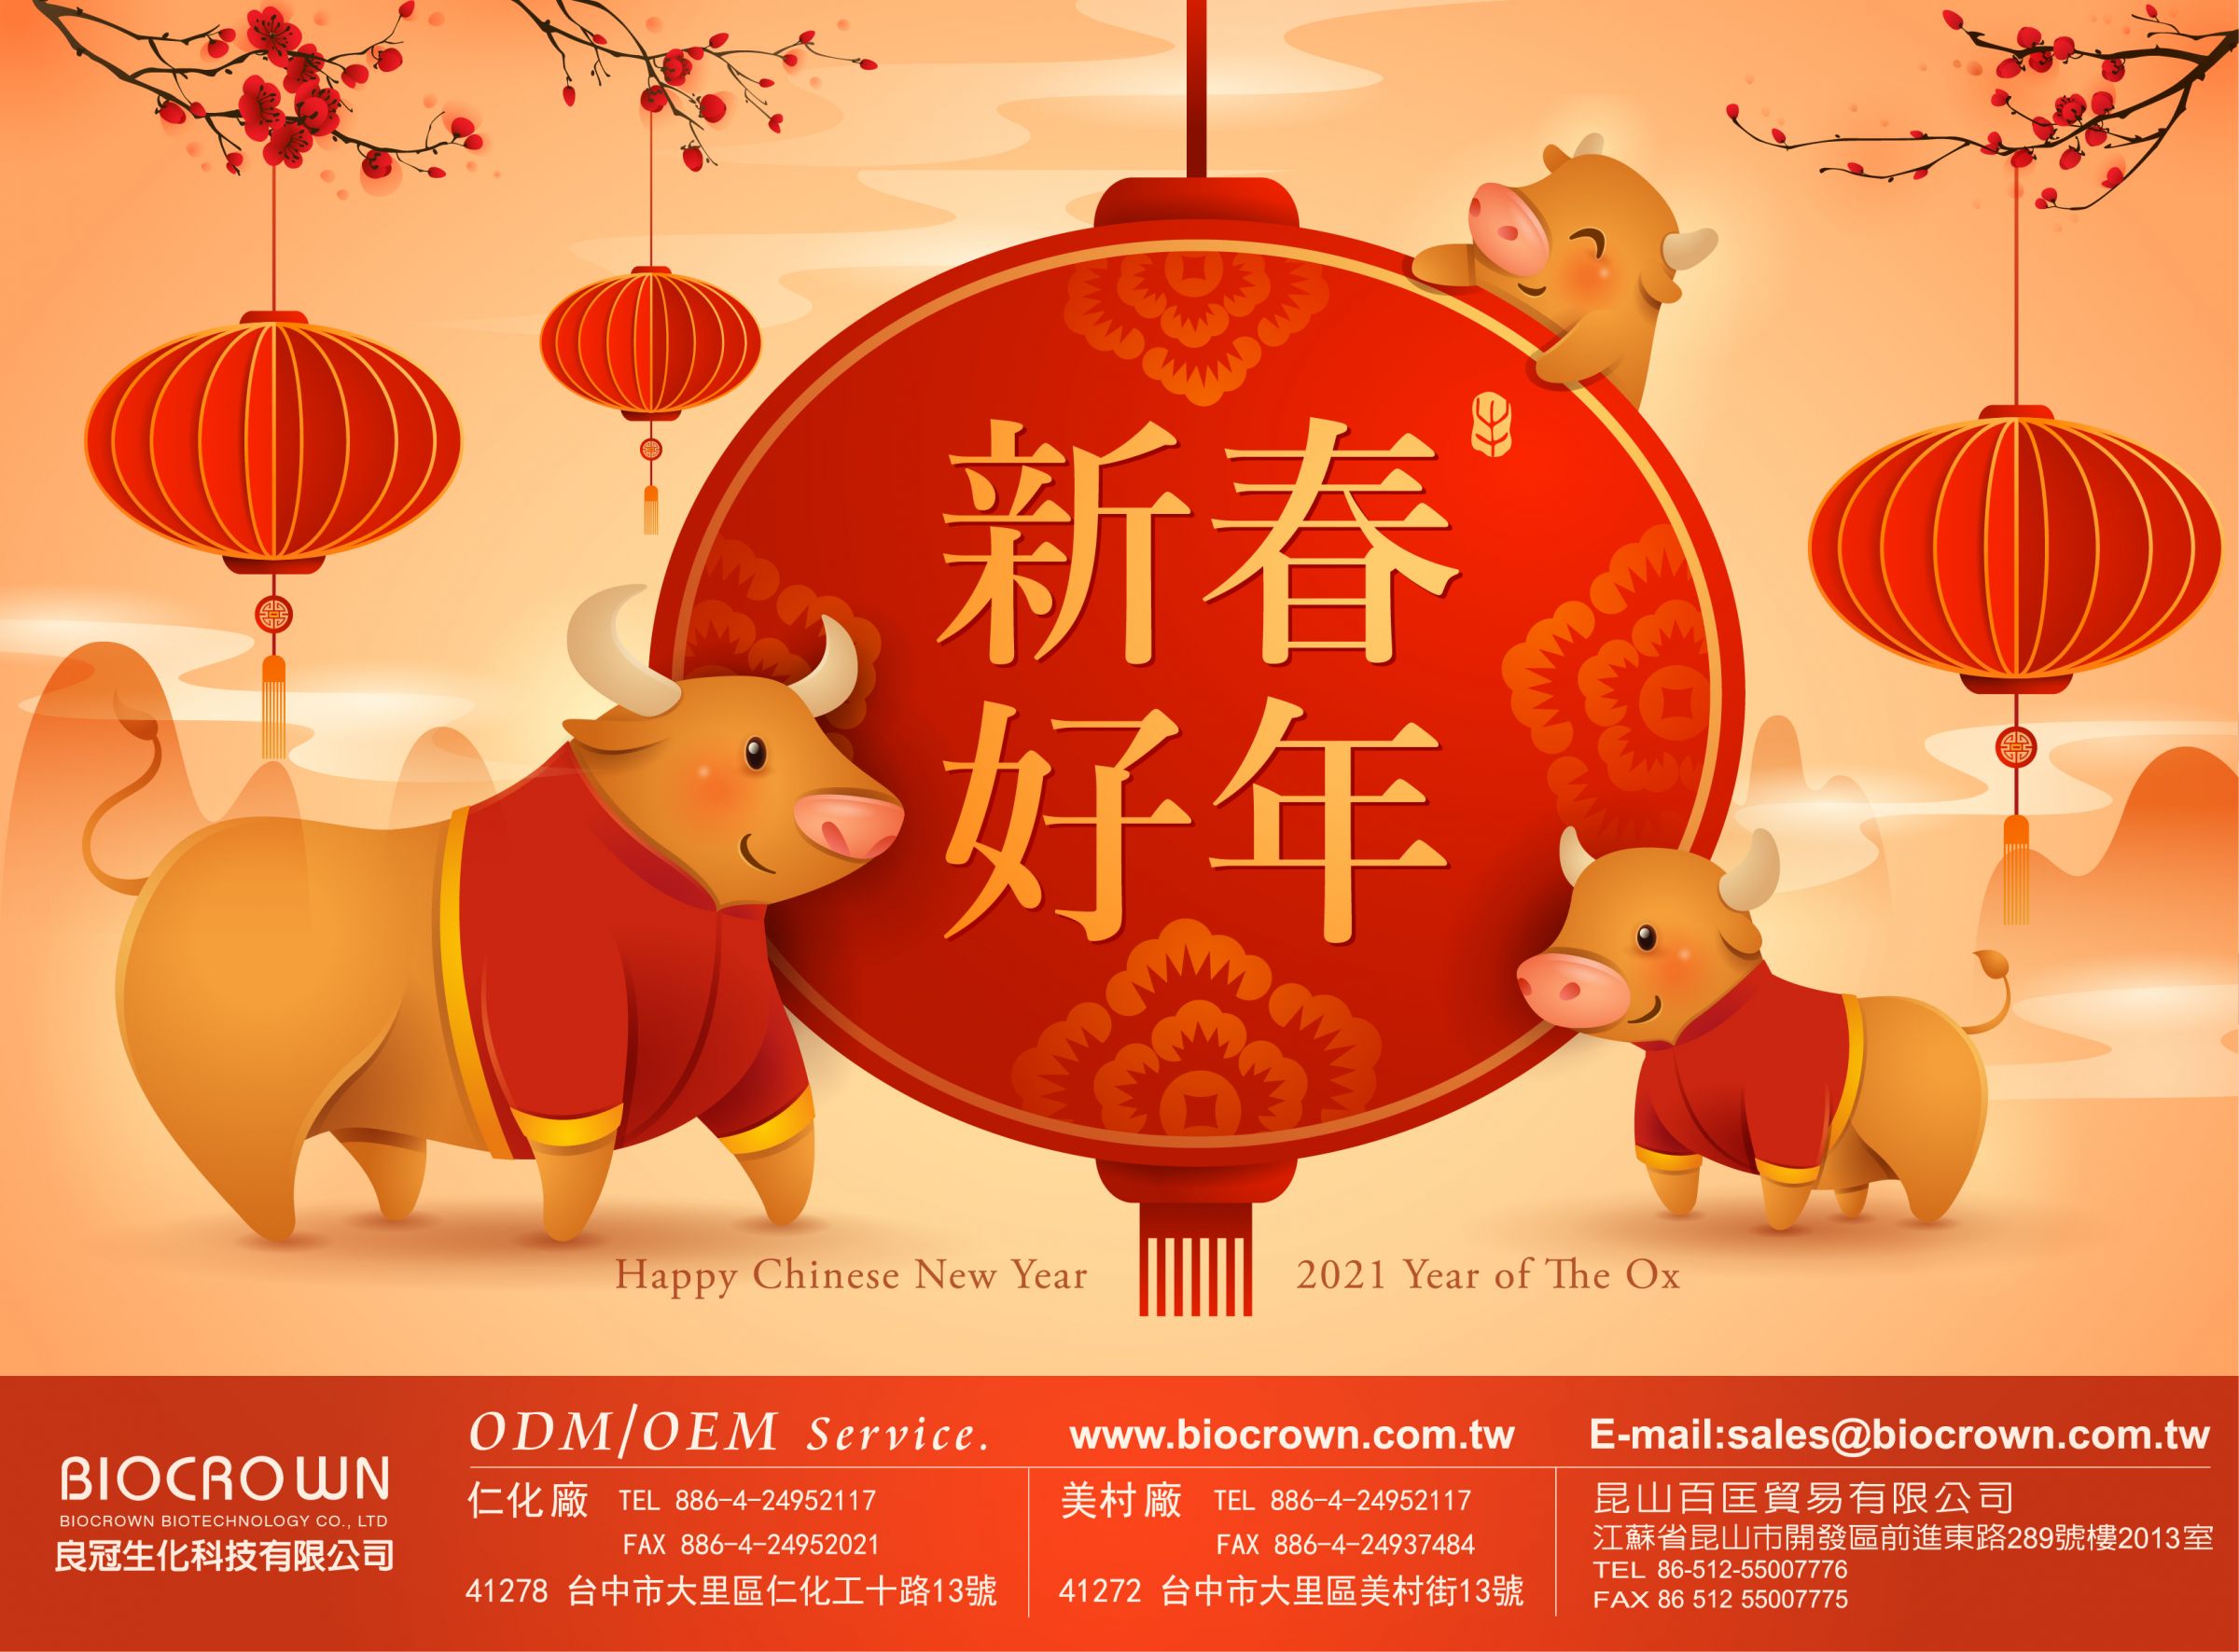 Tahun Baru Cina